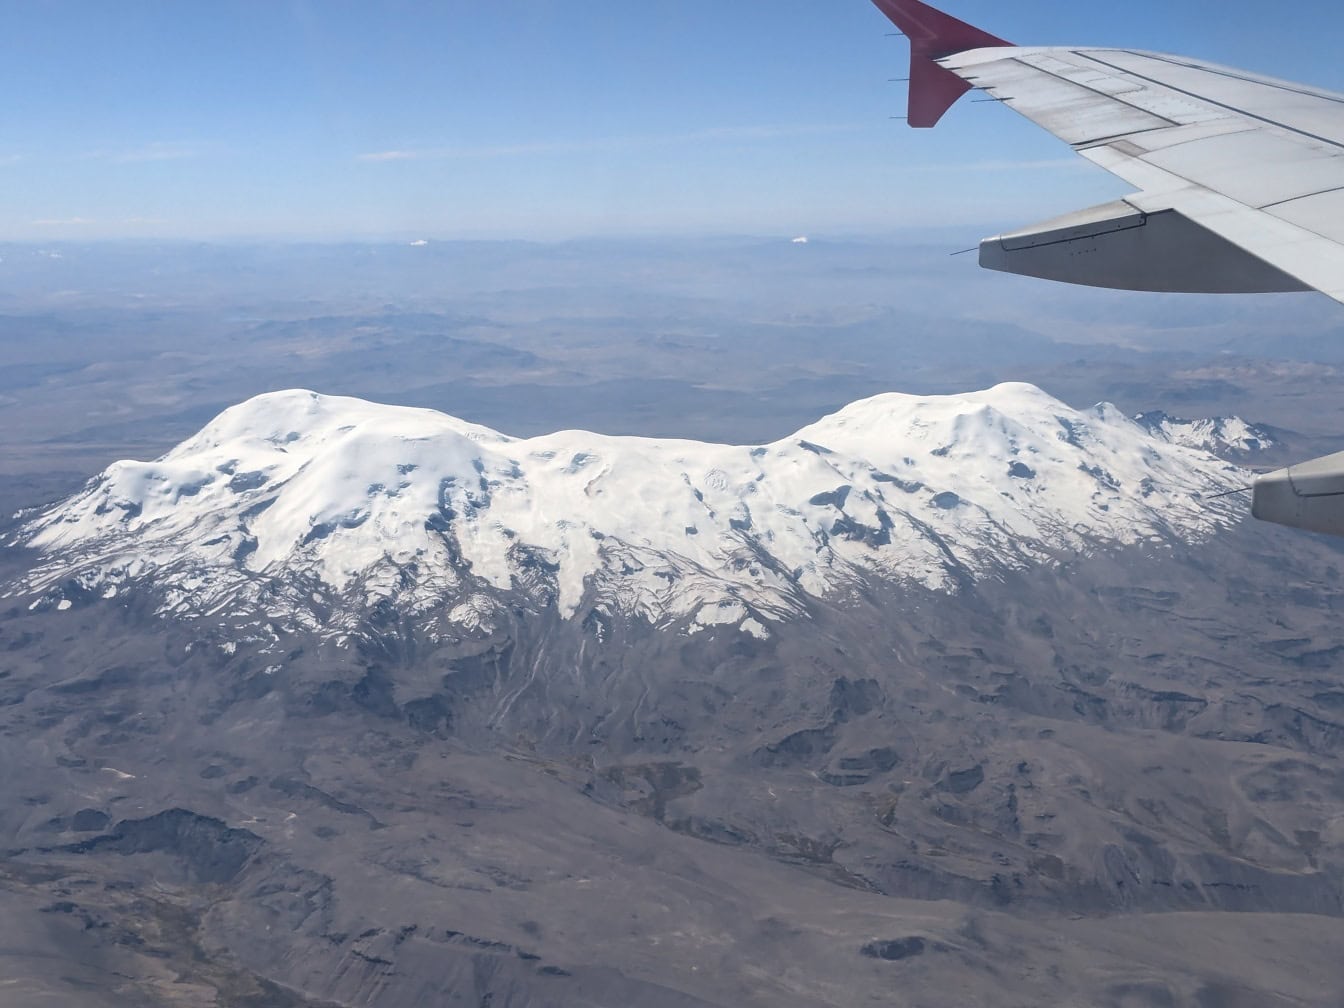 ภาพถ่ายที่ถ่ายจากเครื่องบินที่มีปีกเครื่องบินอยู่เบื้องหน้าและภูเขาไฟ Coropuna ที่ปกคลุมด้วยหิมะซึ่งตั้งอยู่ในเทือกเขาแอนดีสทางตะวันออกเฉียงใต้ตอนกลางของเปรูเป็นฉากหลัง